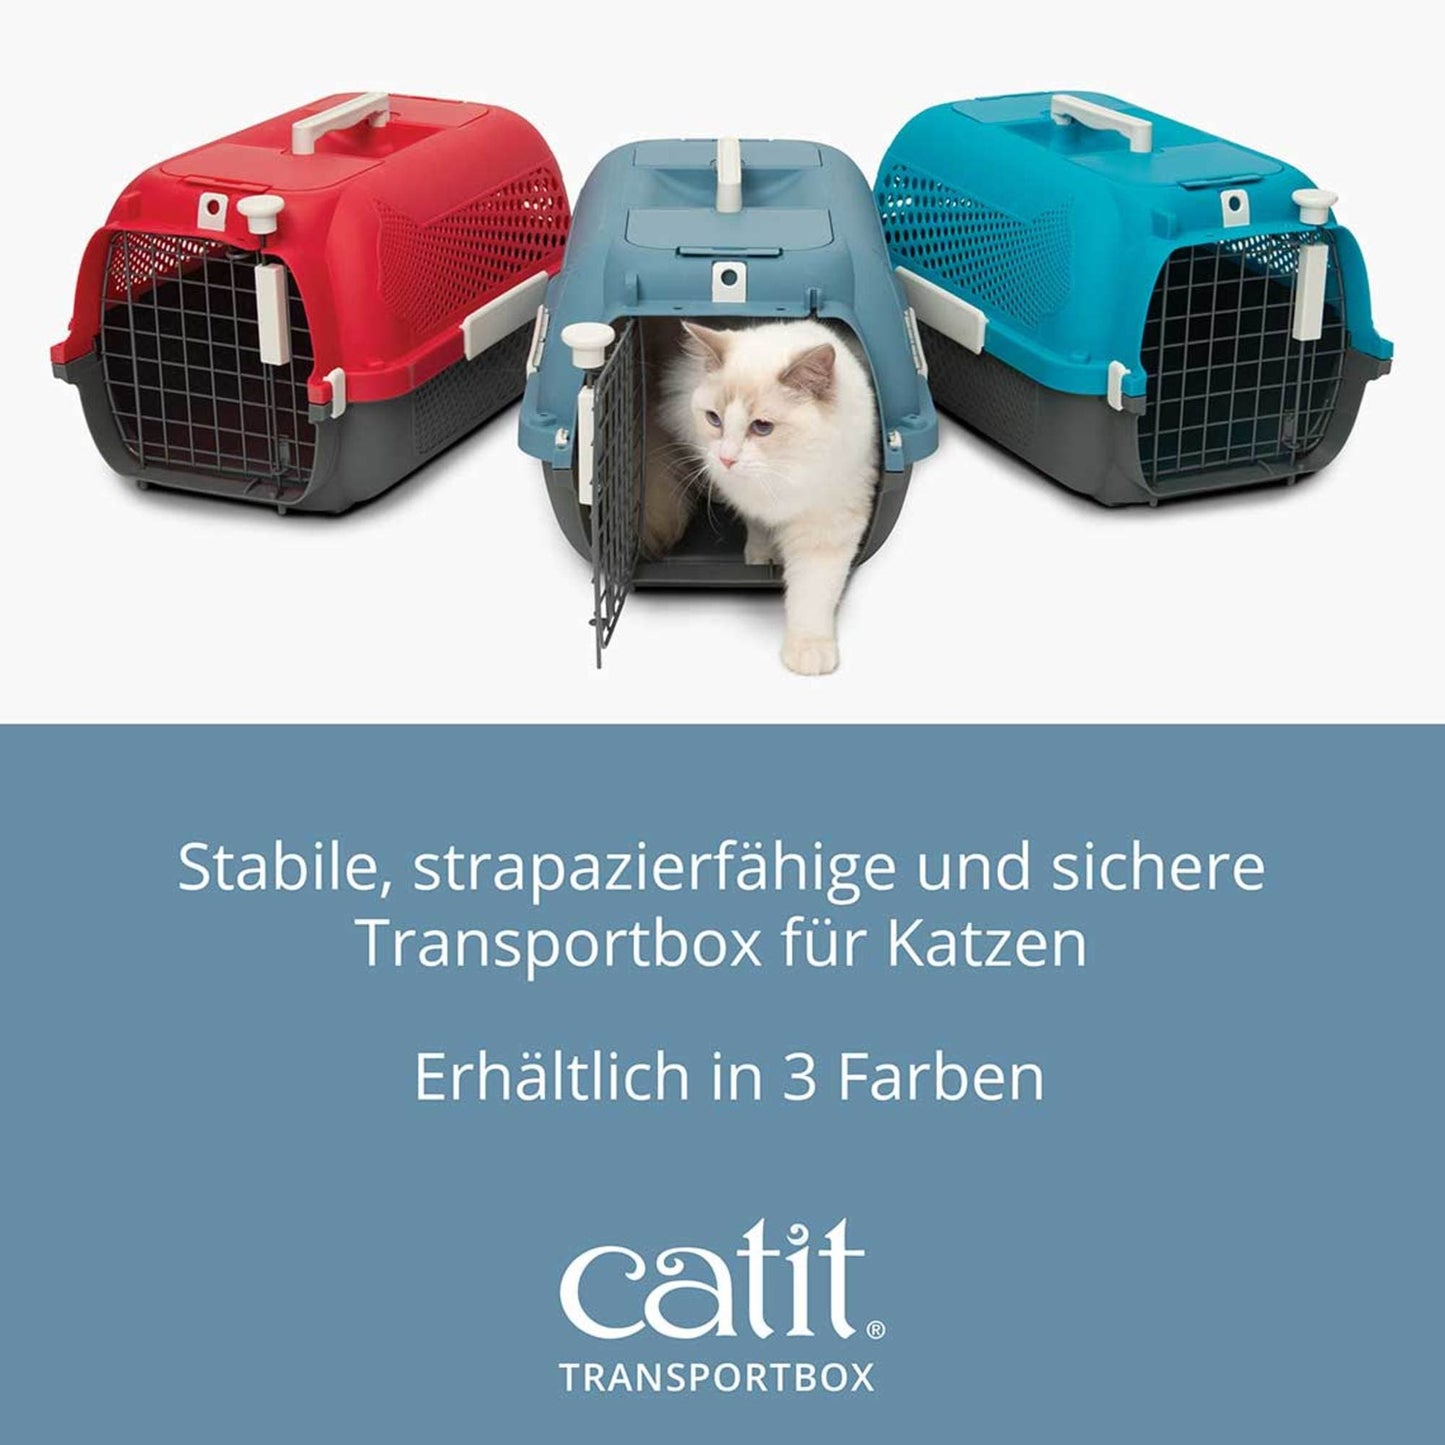 Catit Transportbox für Katzen ─ Klein, Blaugrau